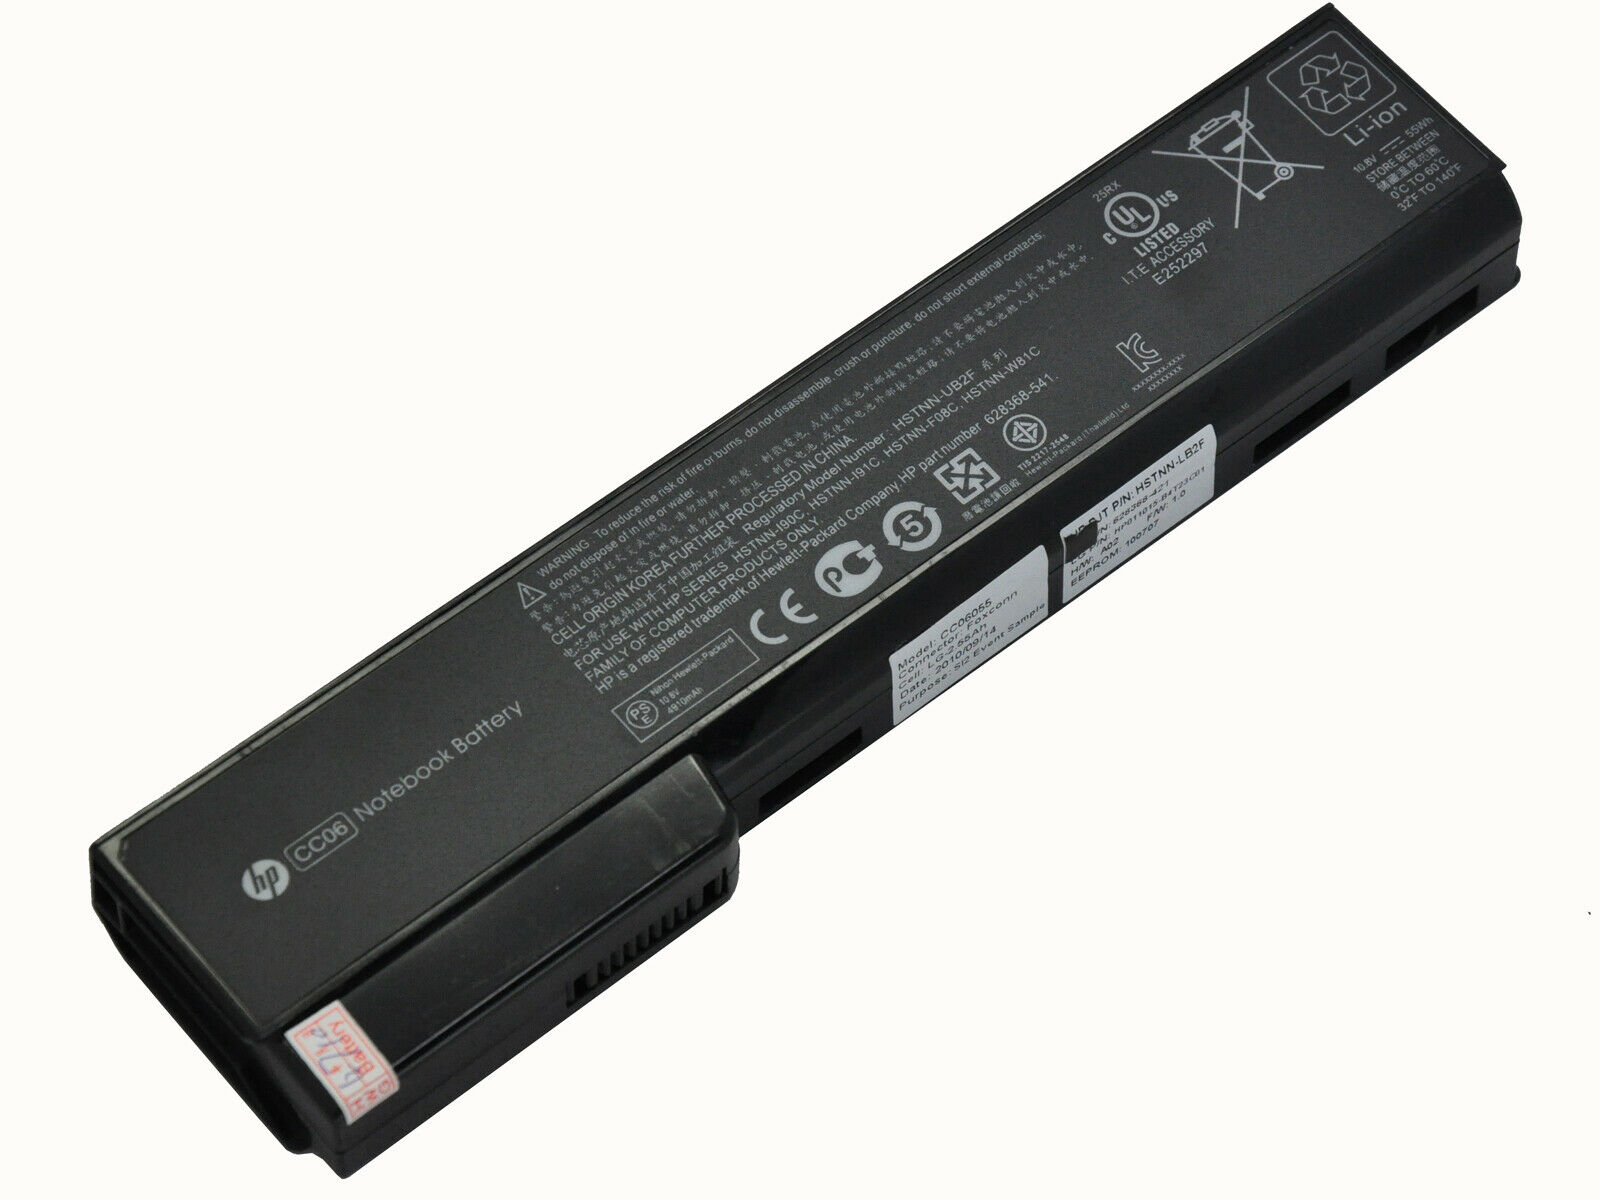 Batería Original para HP 628666-001 628668-001 628670-001 CC06 CC06XL